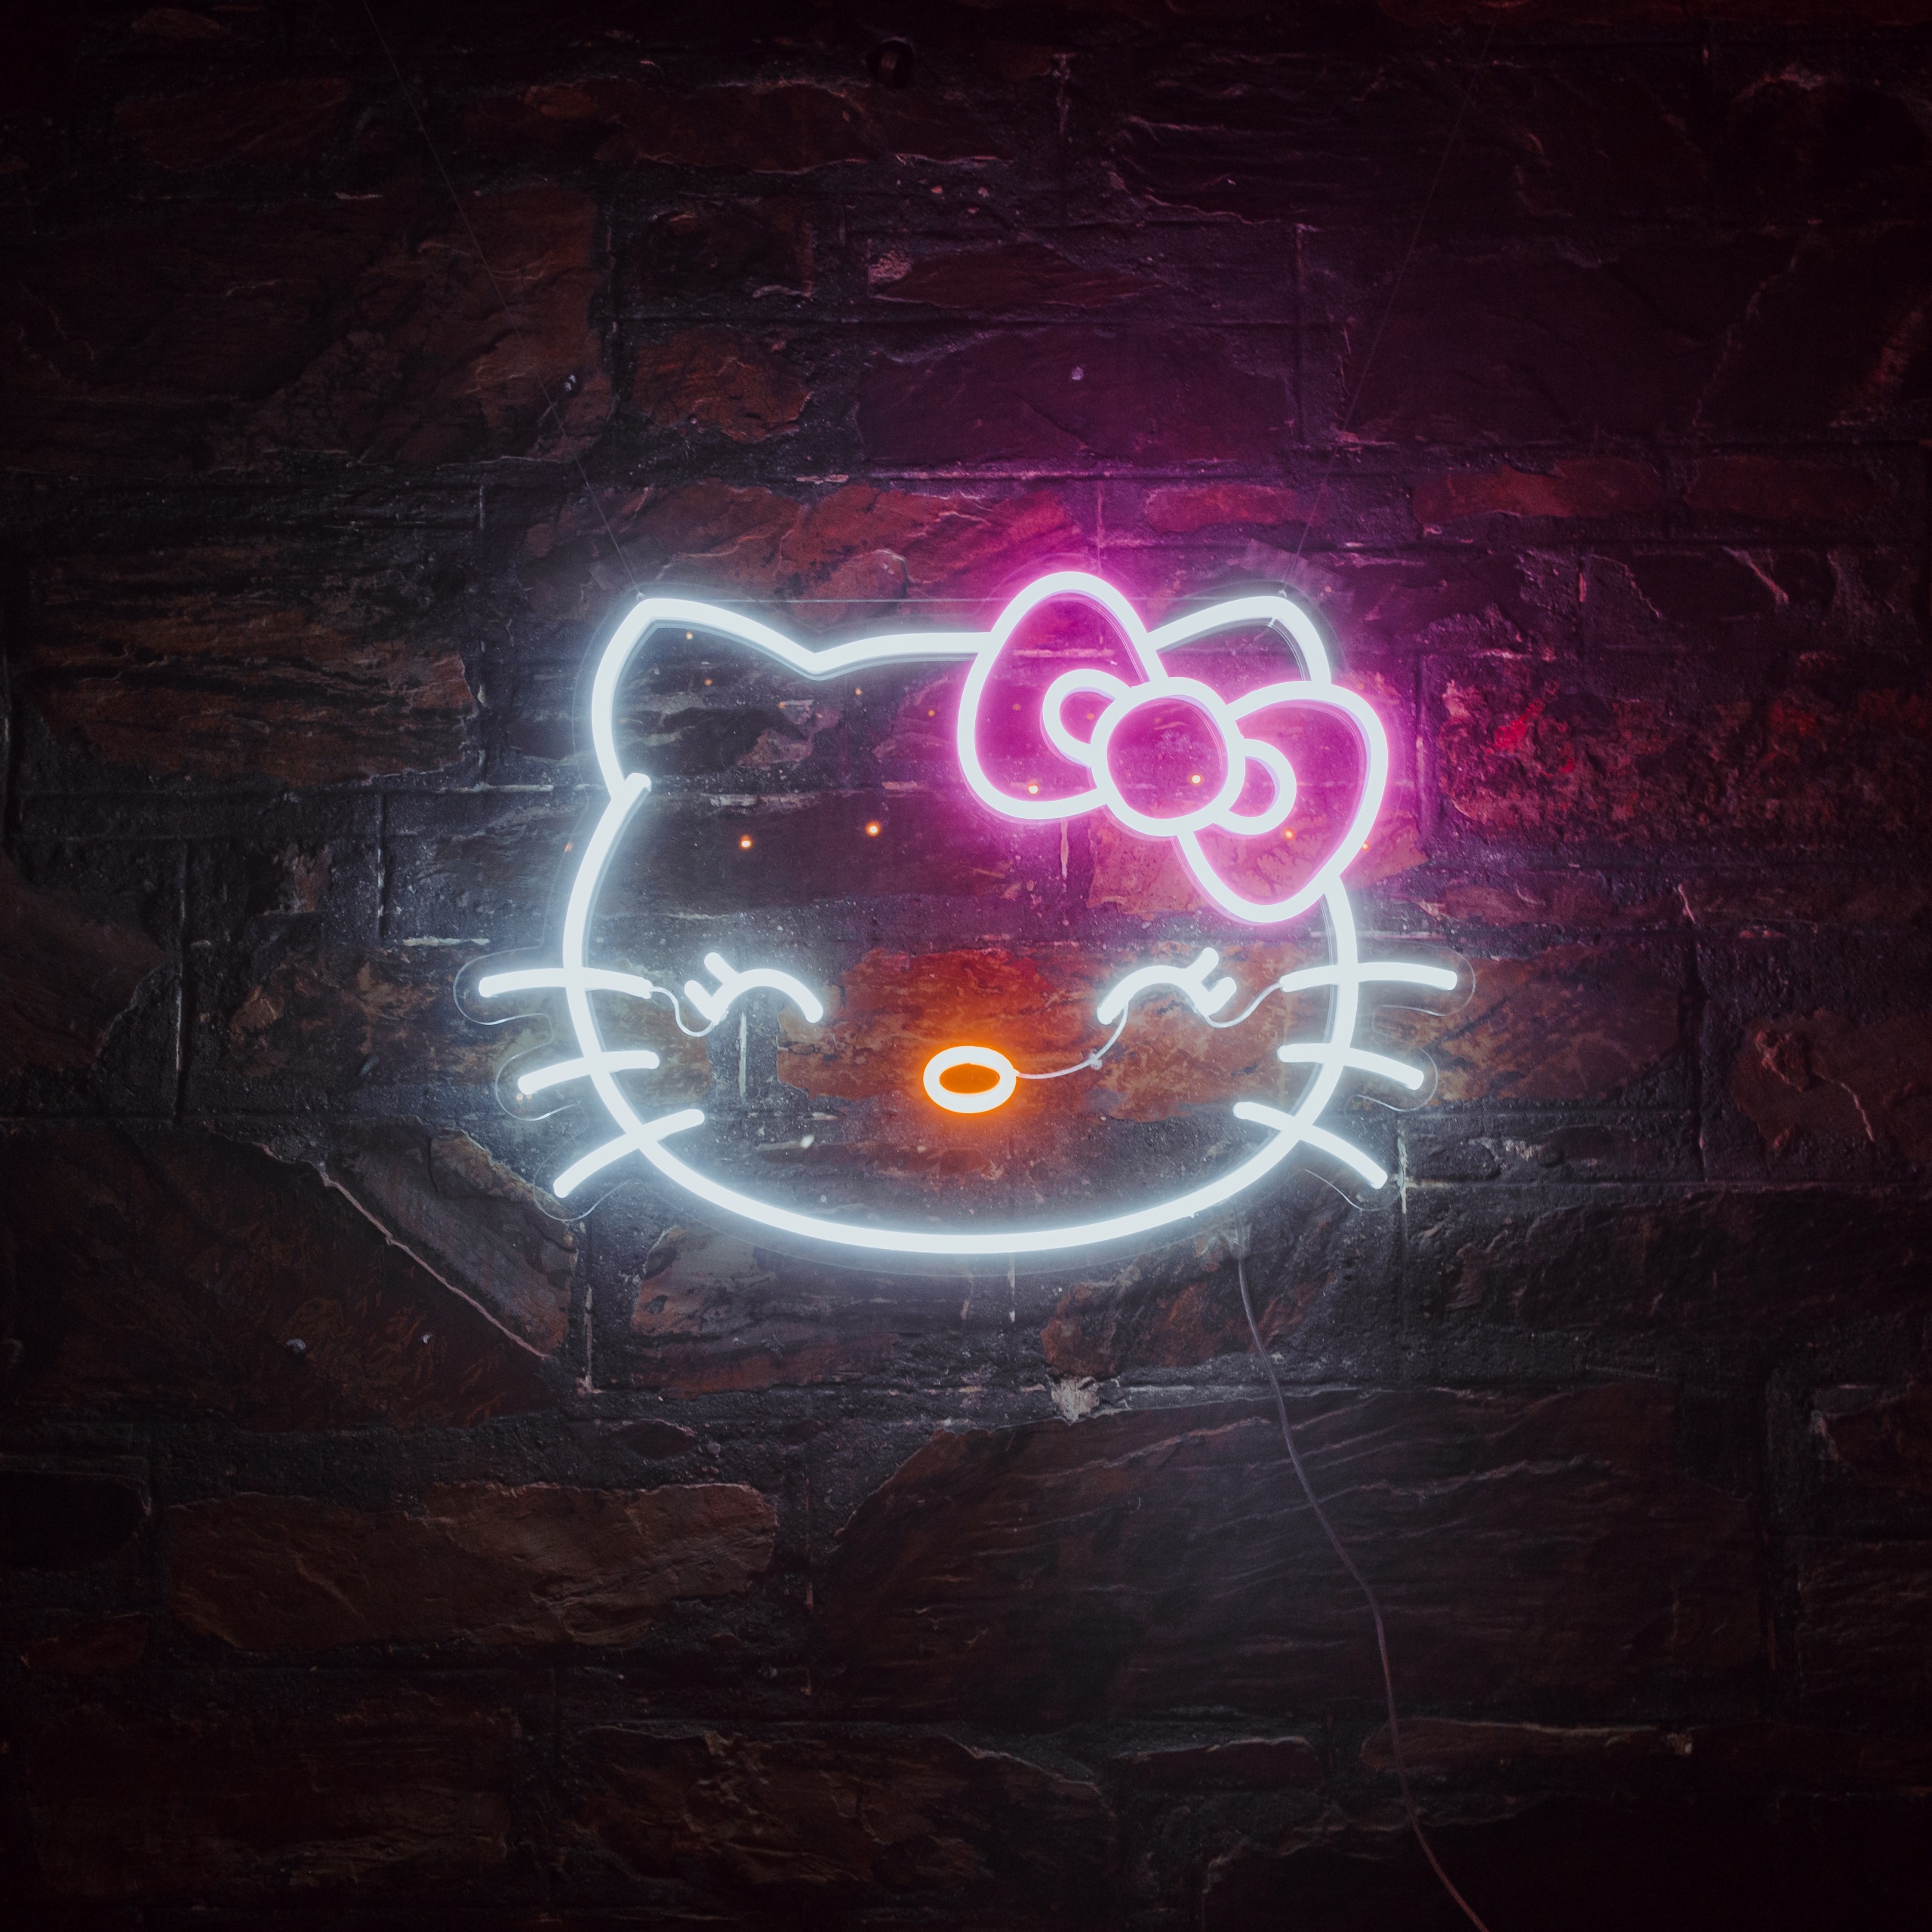 Nếu bạn muốn tìm kiếm hình nền độ phân giải cao với chất lượng hình ảnh tuyệt đẹp, thì hình nền Hello Kitty 4k sẽ là sự lựa chọn tuyệt vời cho bạn. Hãy tận hưởng màu sắc tươi sáng, hiệu ứng động độc đáo và sự dễ thương của Hello Kitty.